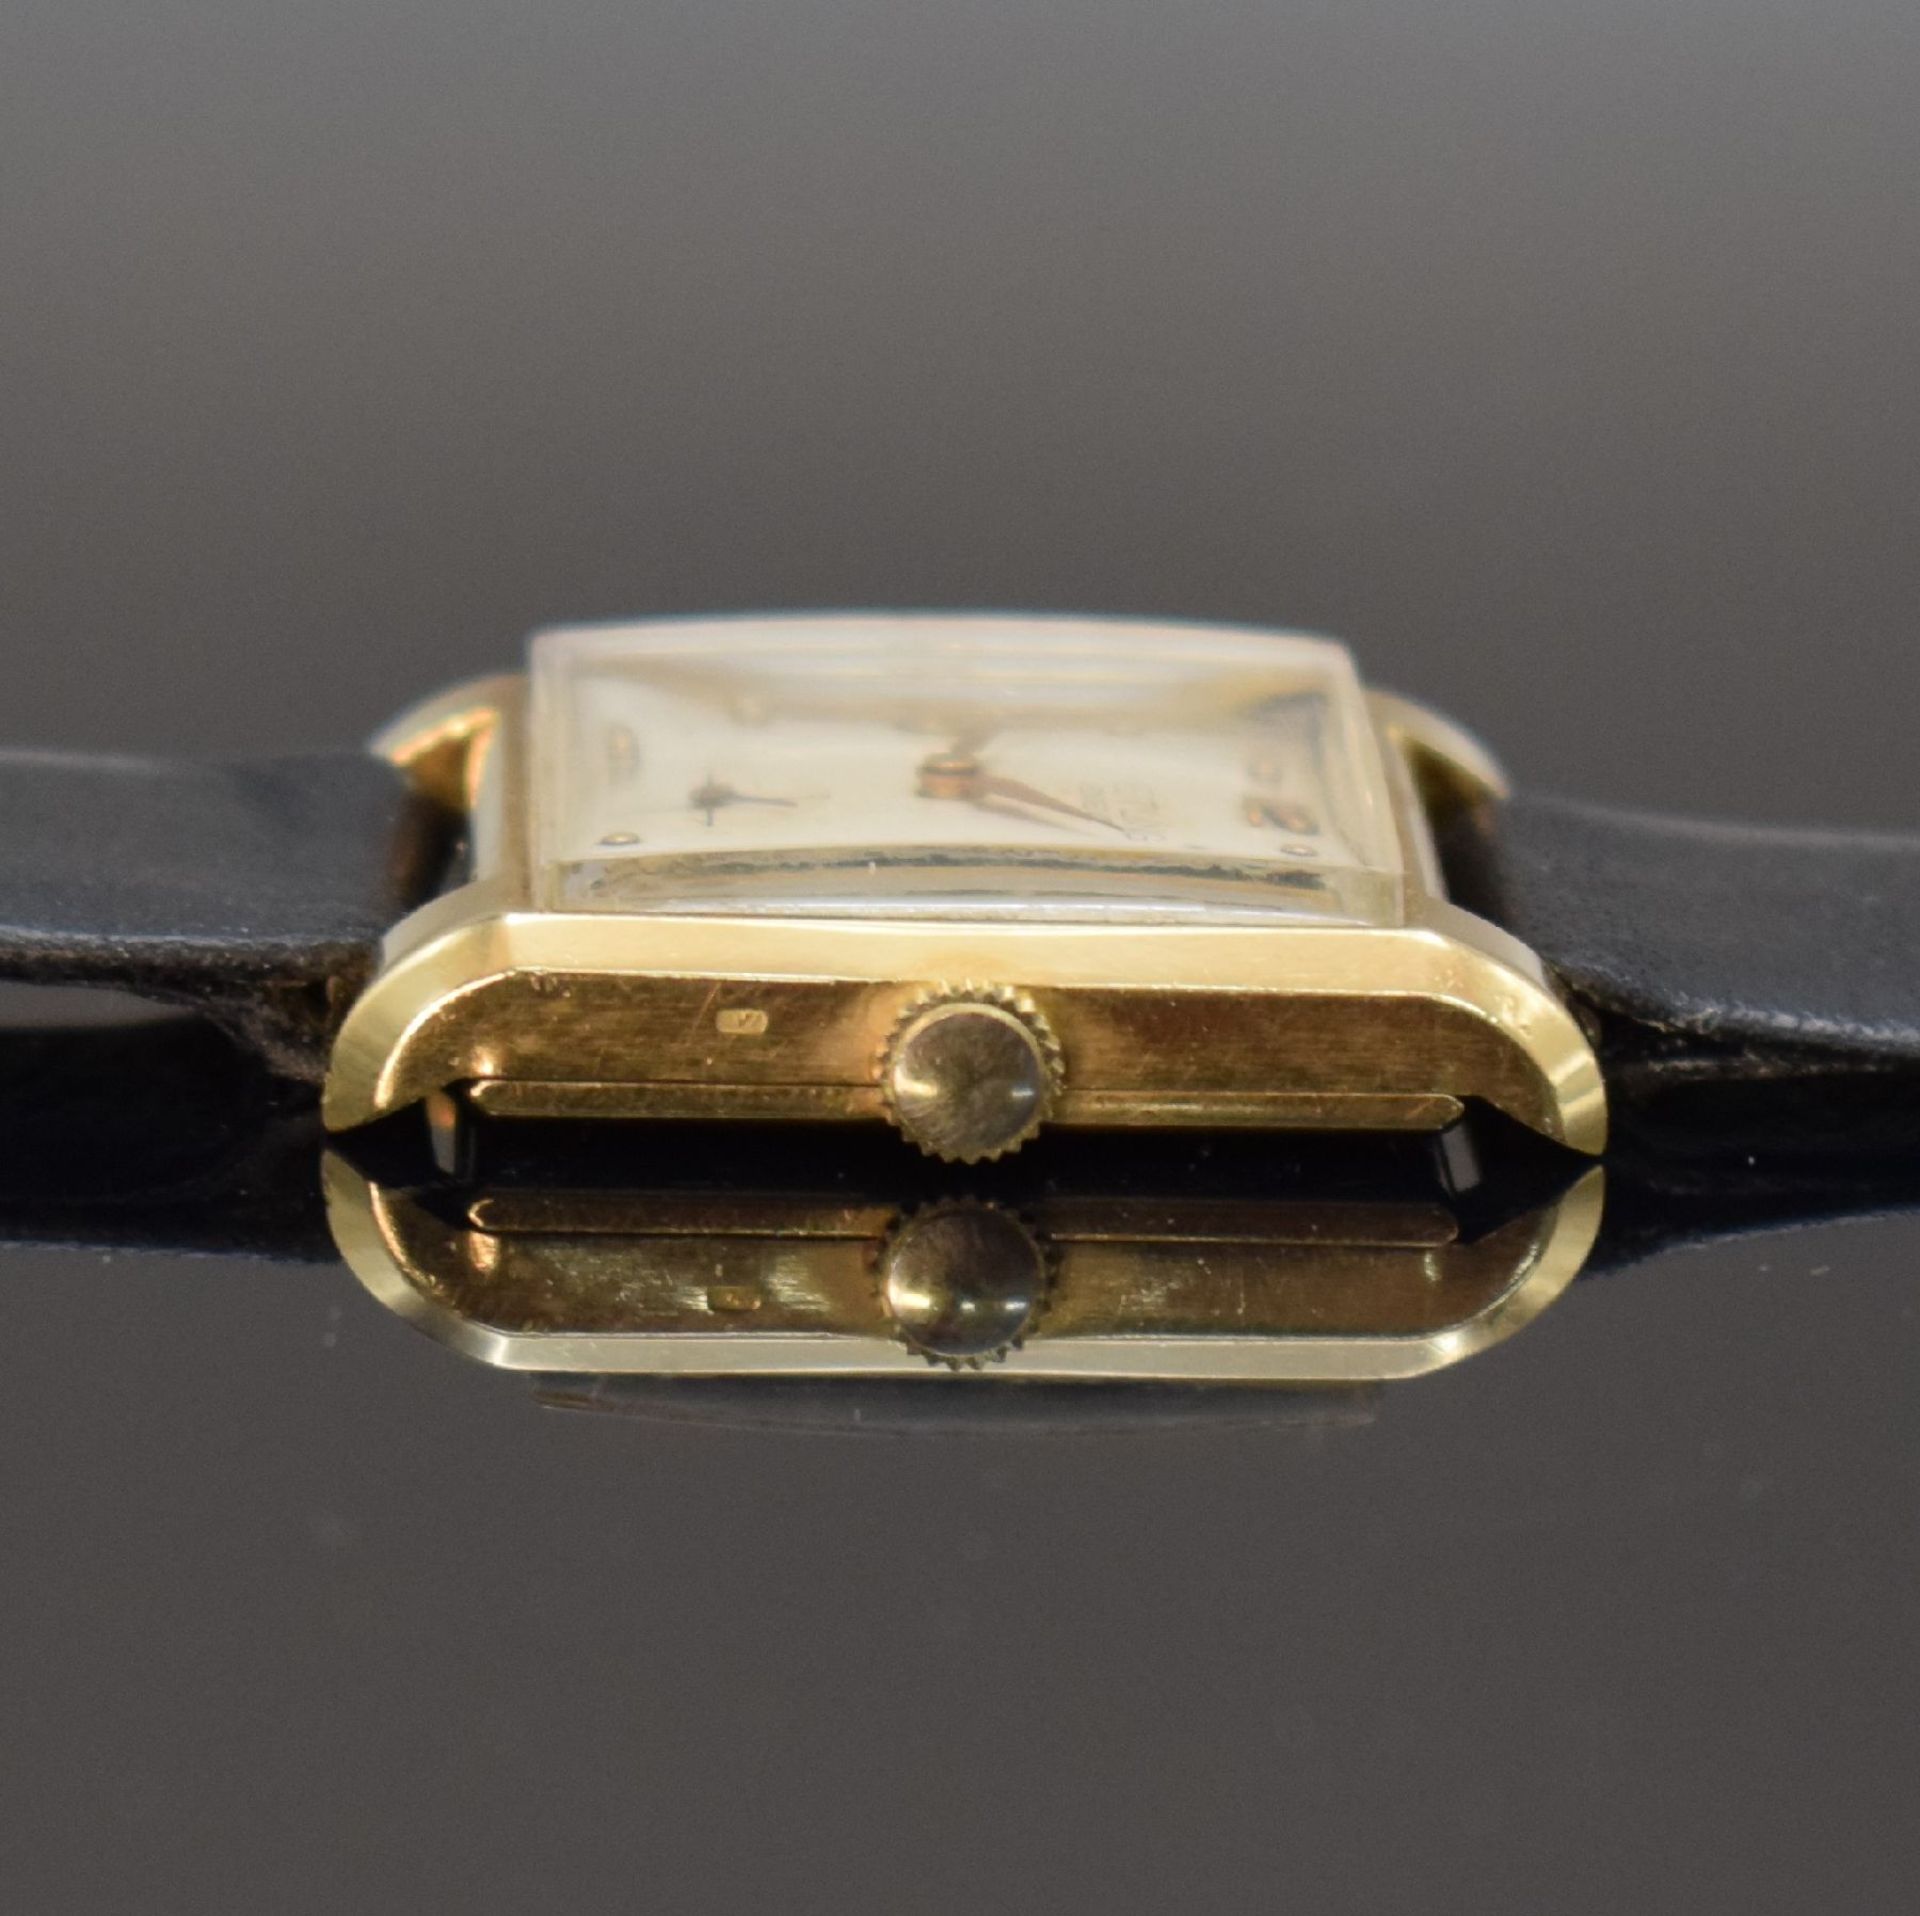 Rechteckige Armbanduhr in GG 750/000, Schweiz um 1940, - Image 4 of 6